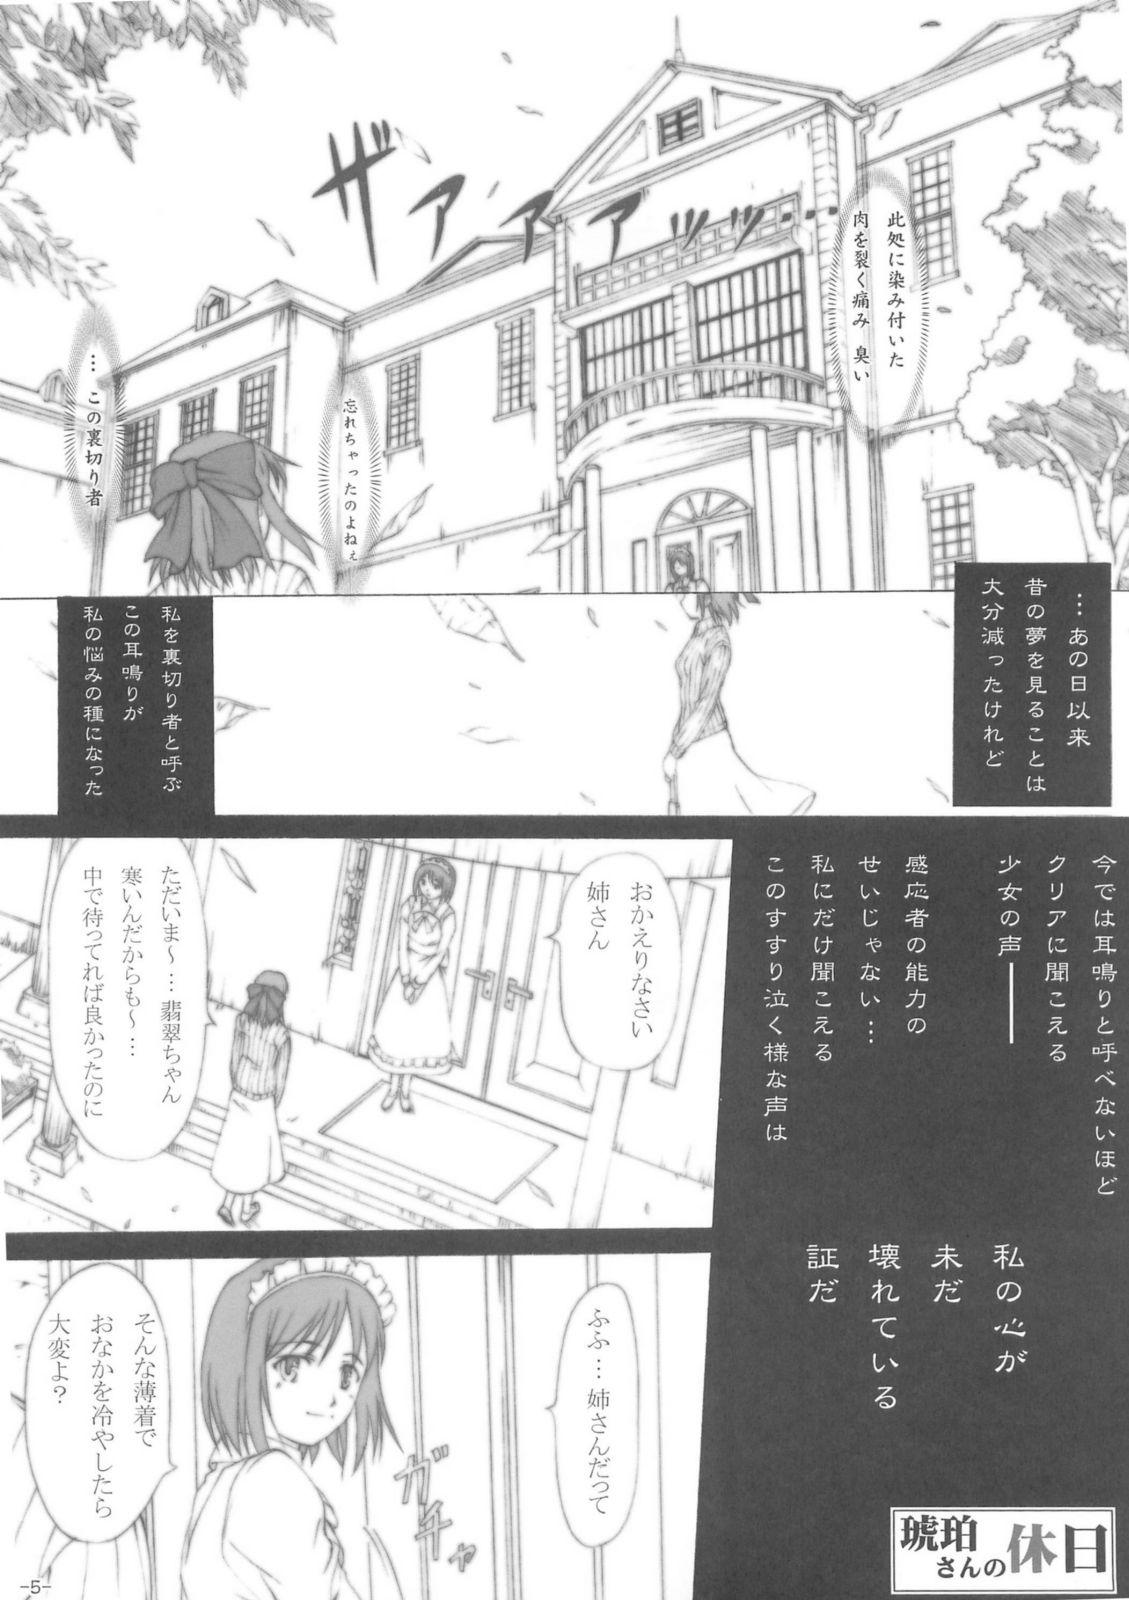 Morena Oborezuki - Fate stay night Tsukihime Tattoo - Page 4